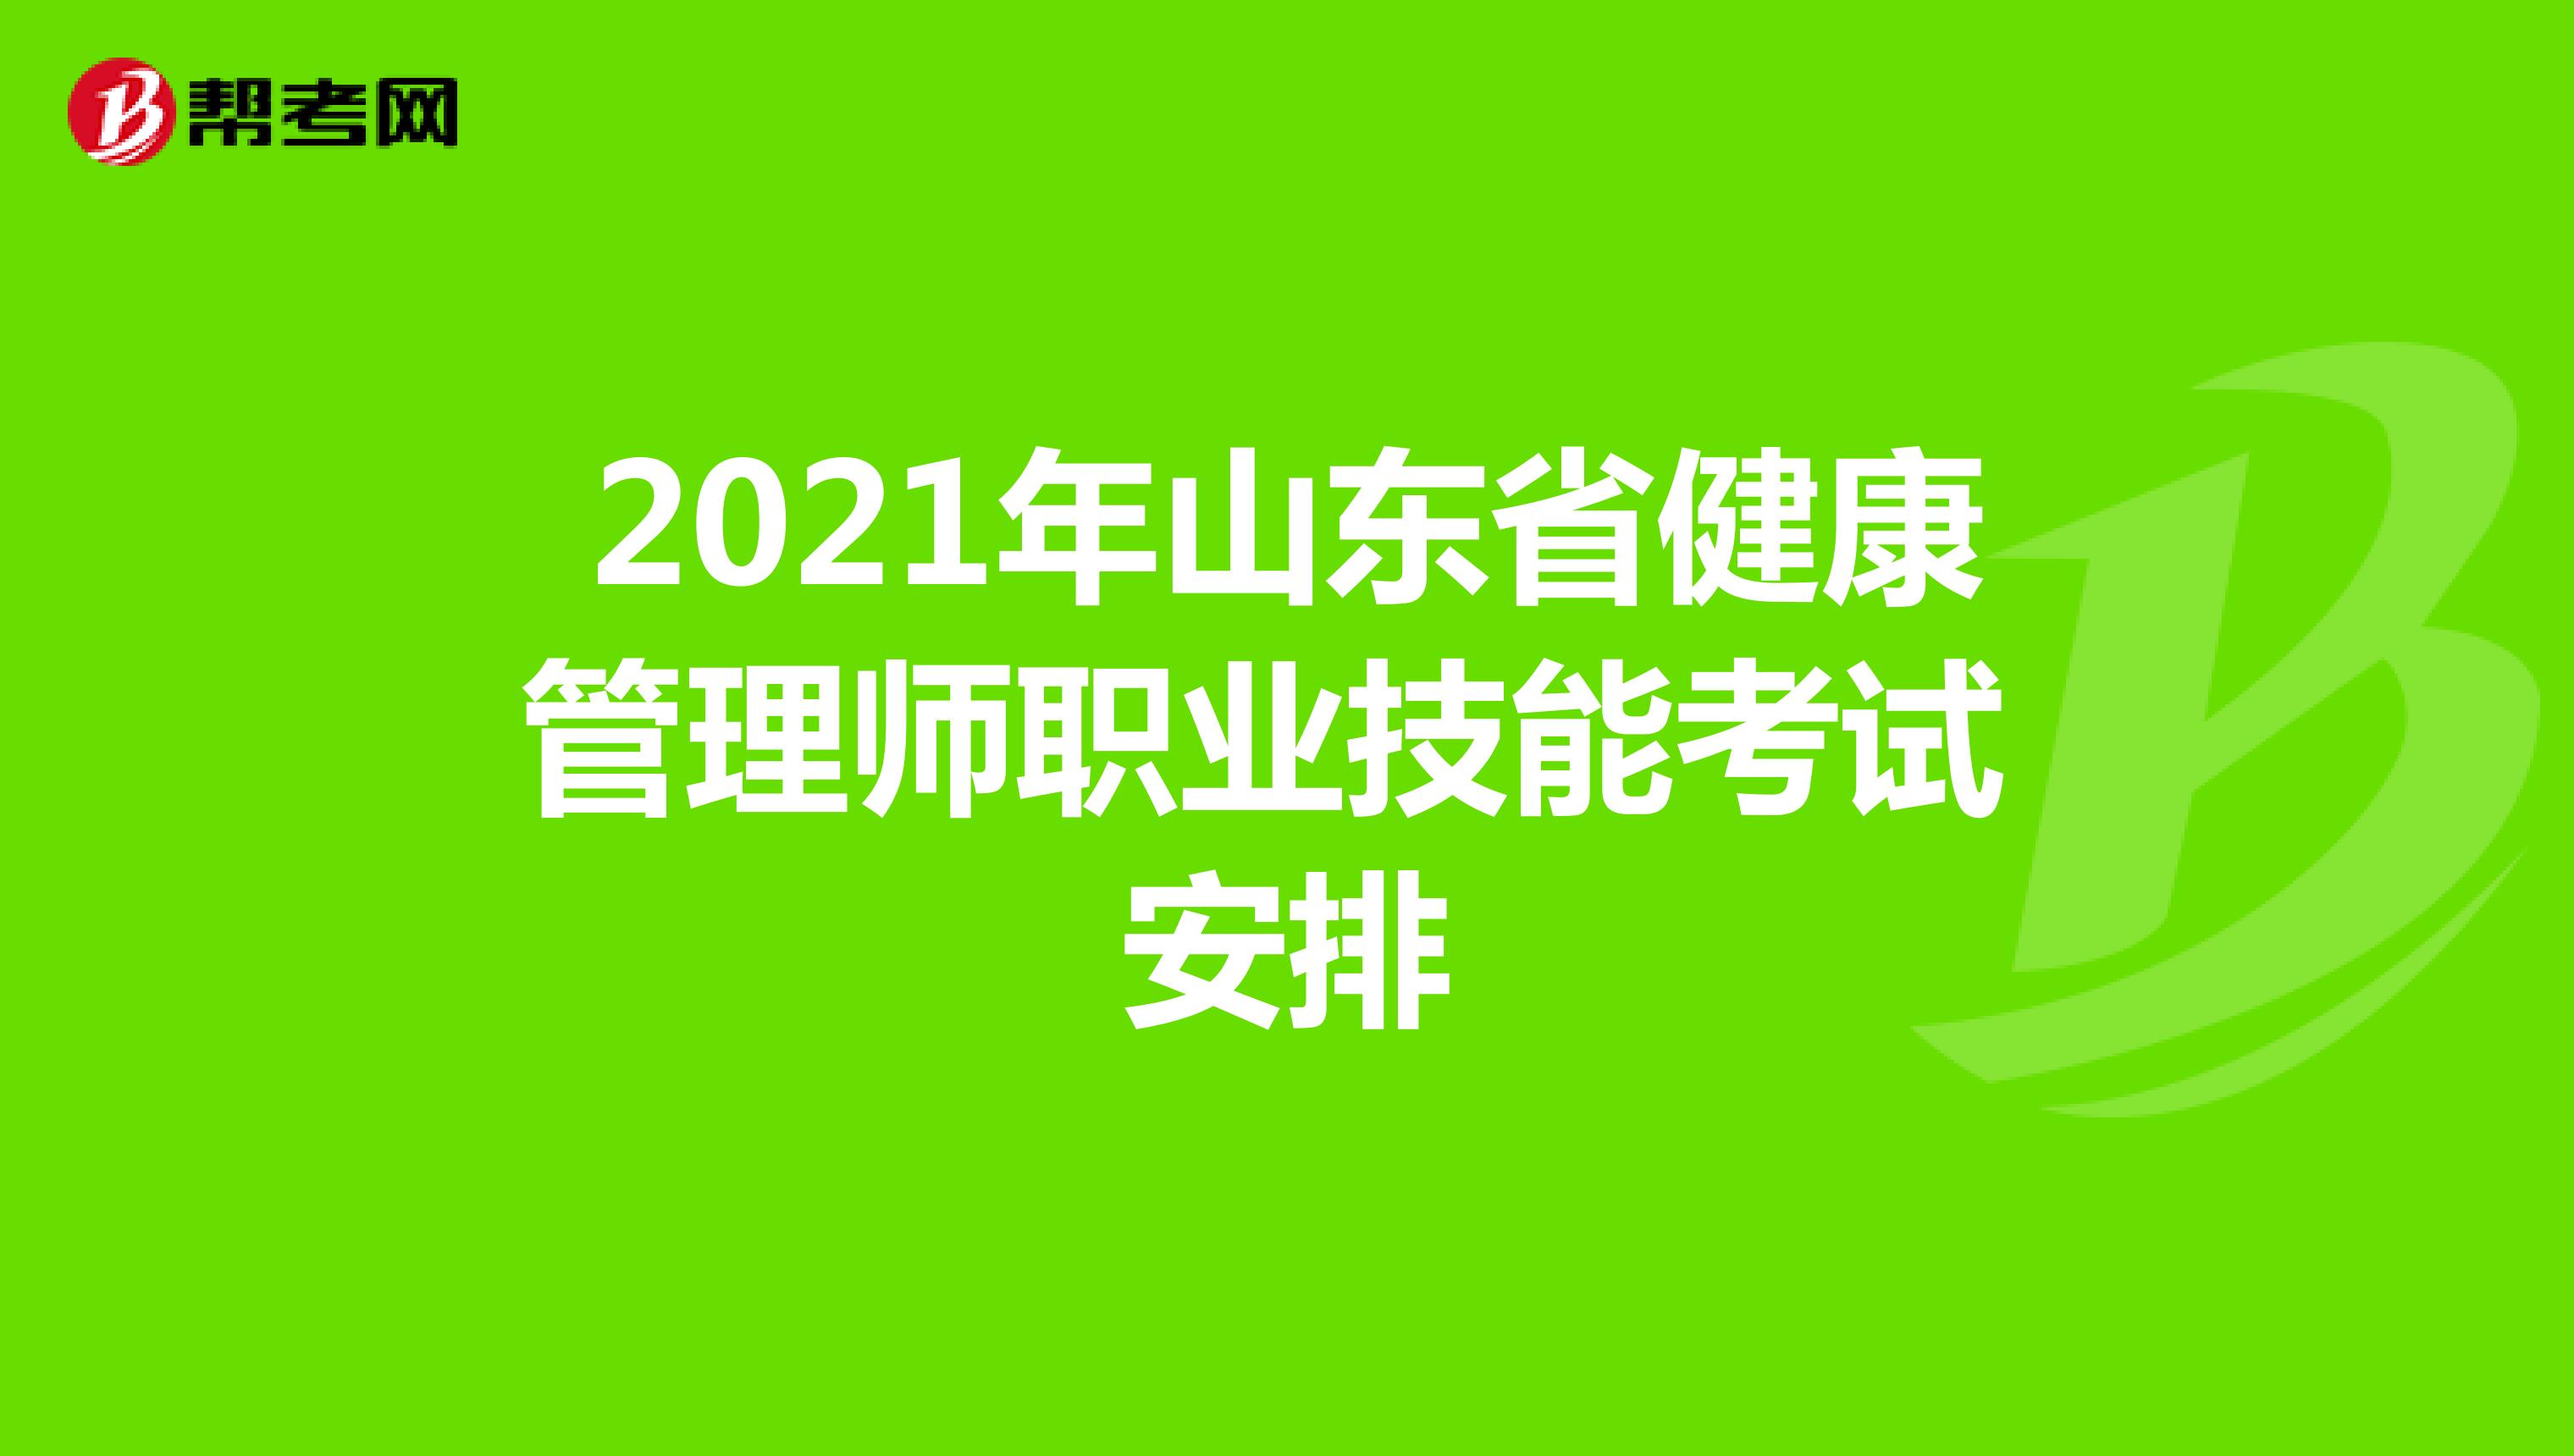 2021年山东省健康管理师职业技能考试安排